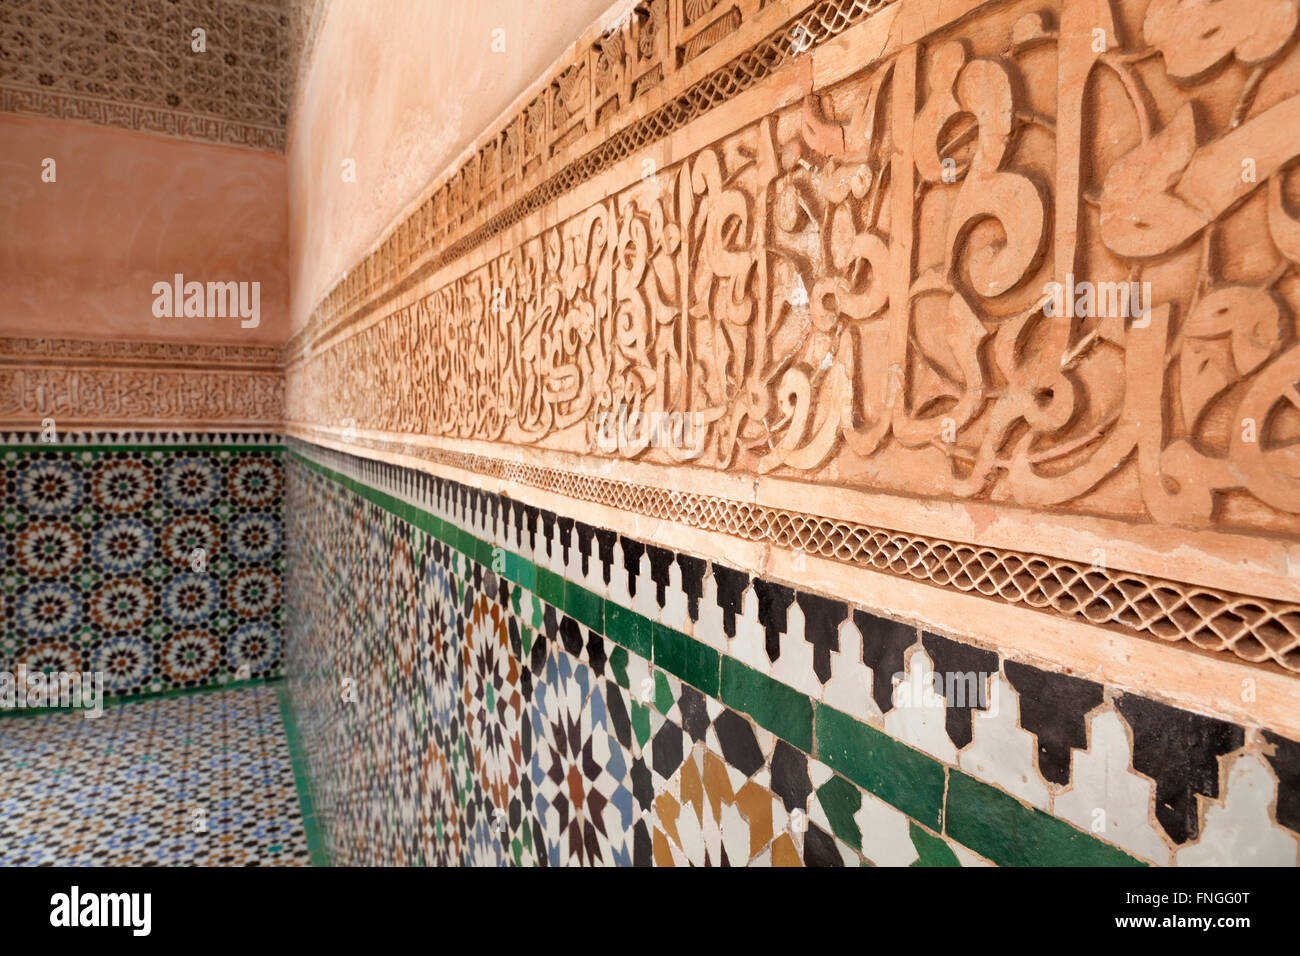 Intonaco decorazioni murali e mosaici della medersa Ben Youssef, Marrakech, Marocco Foto Stock